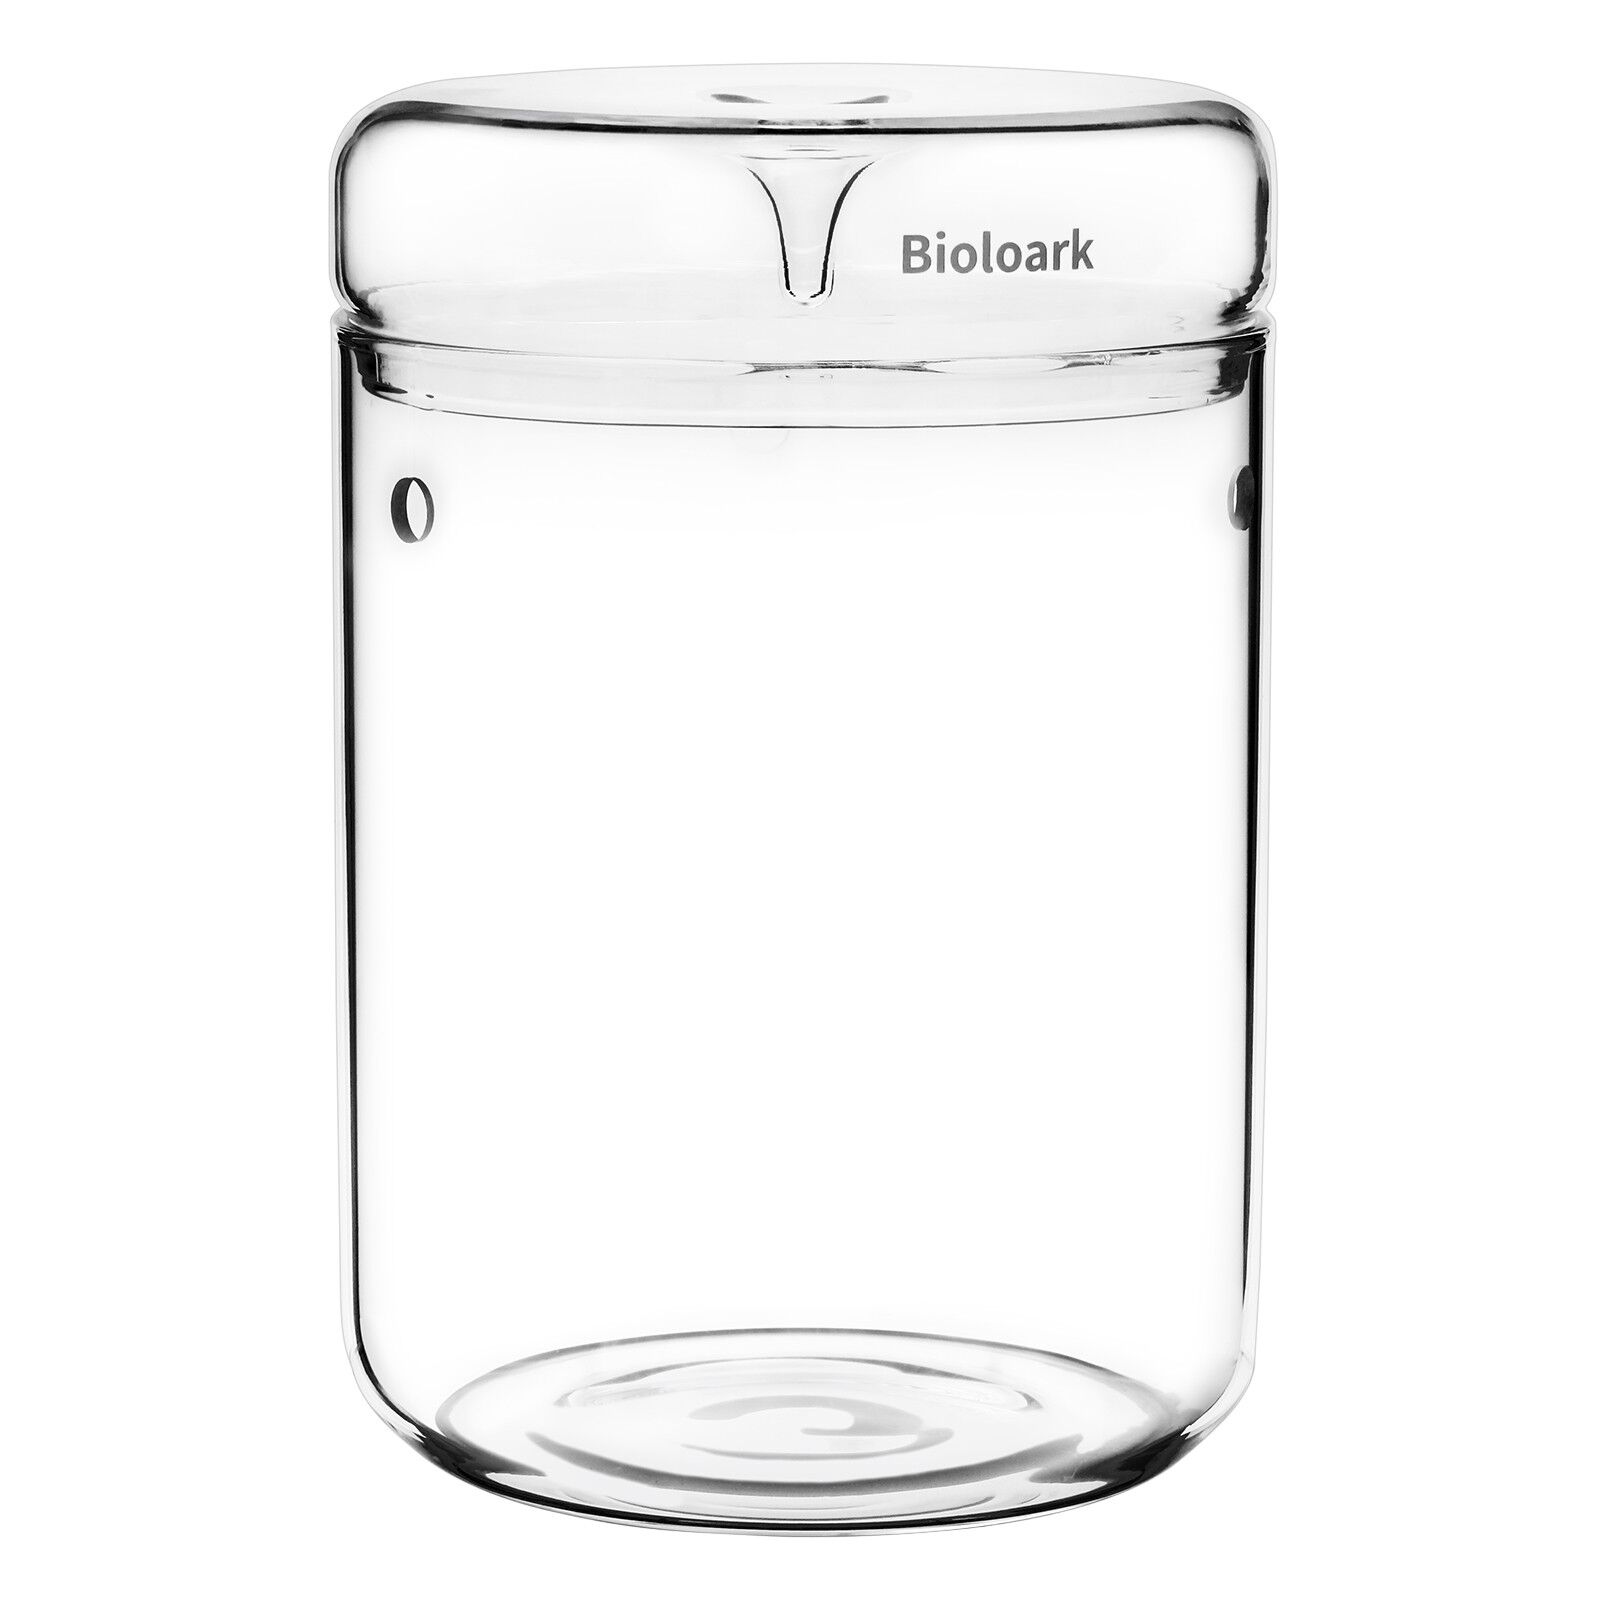 Bioloark - Luji Glass Cup